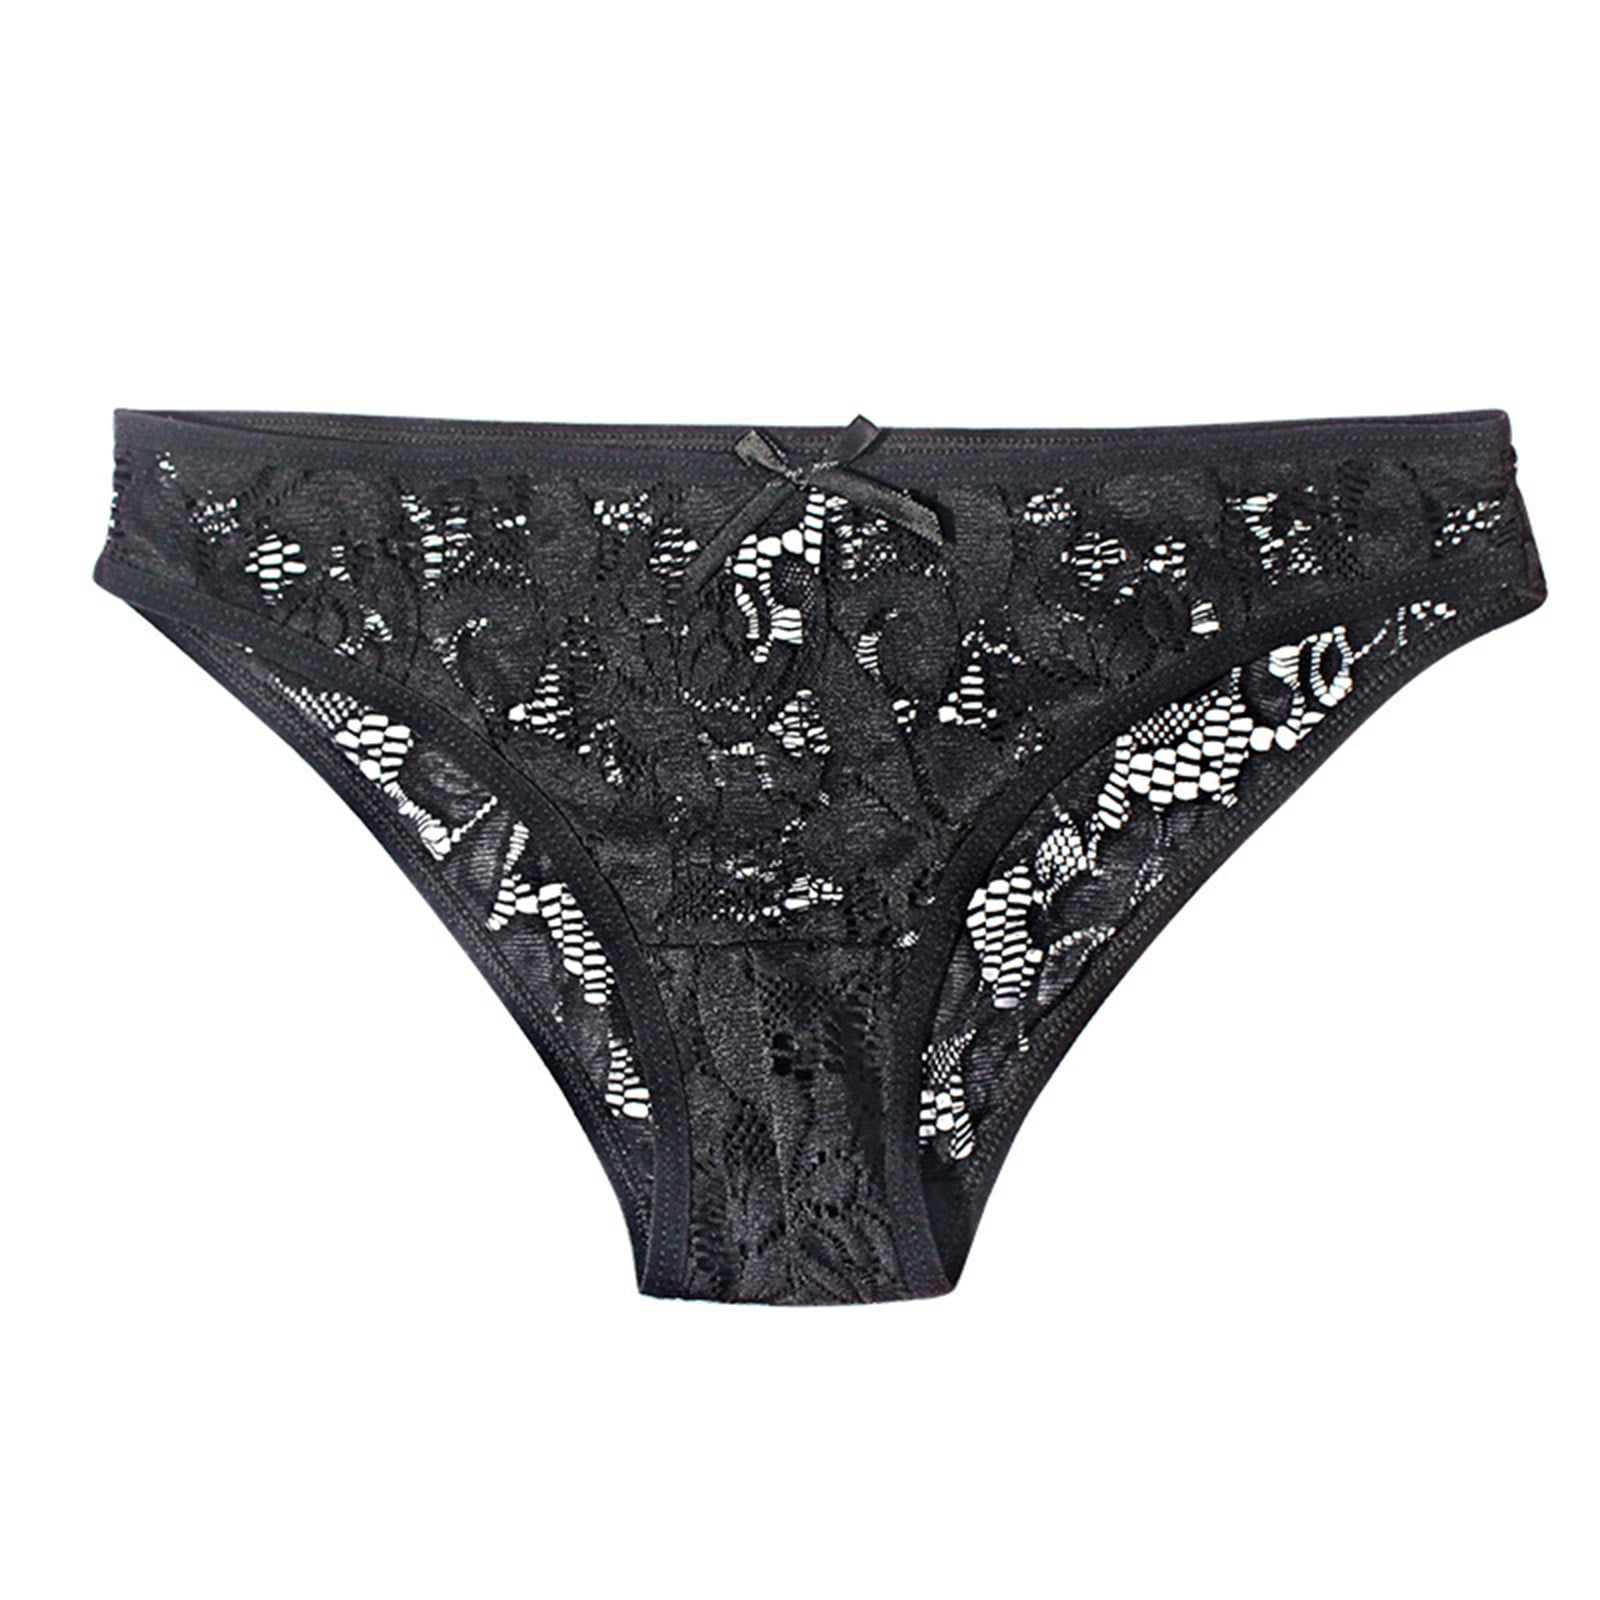 CBGELRT Women's Panties Lace Soft Lingerie Mesh Cotton Underwear